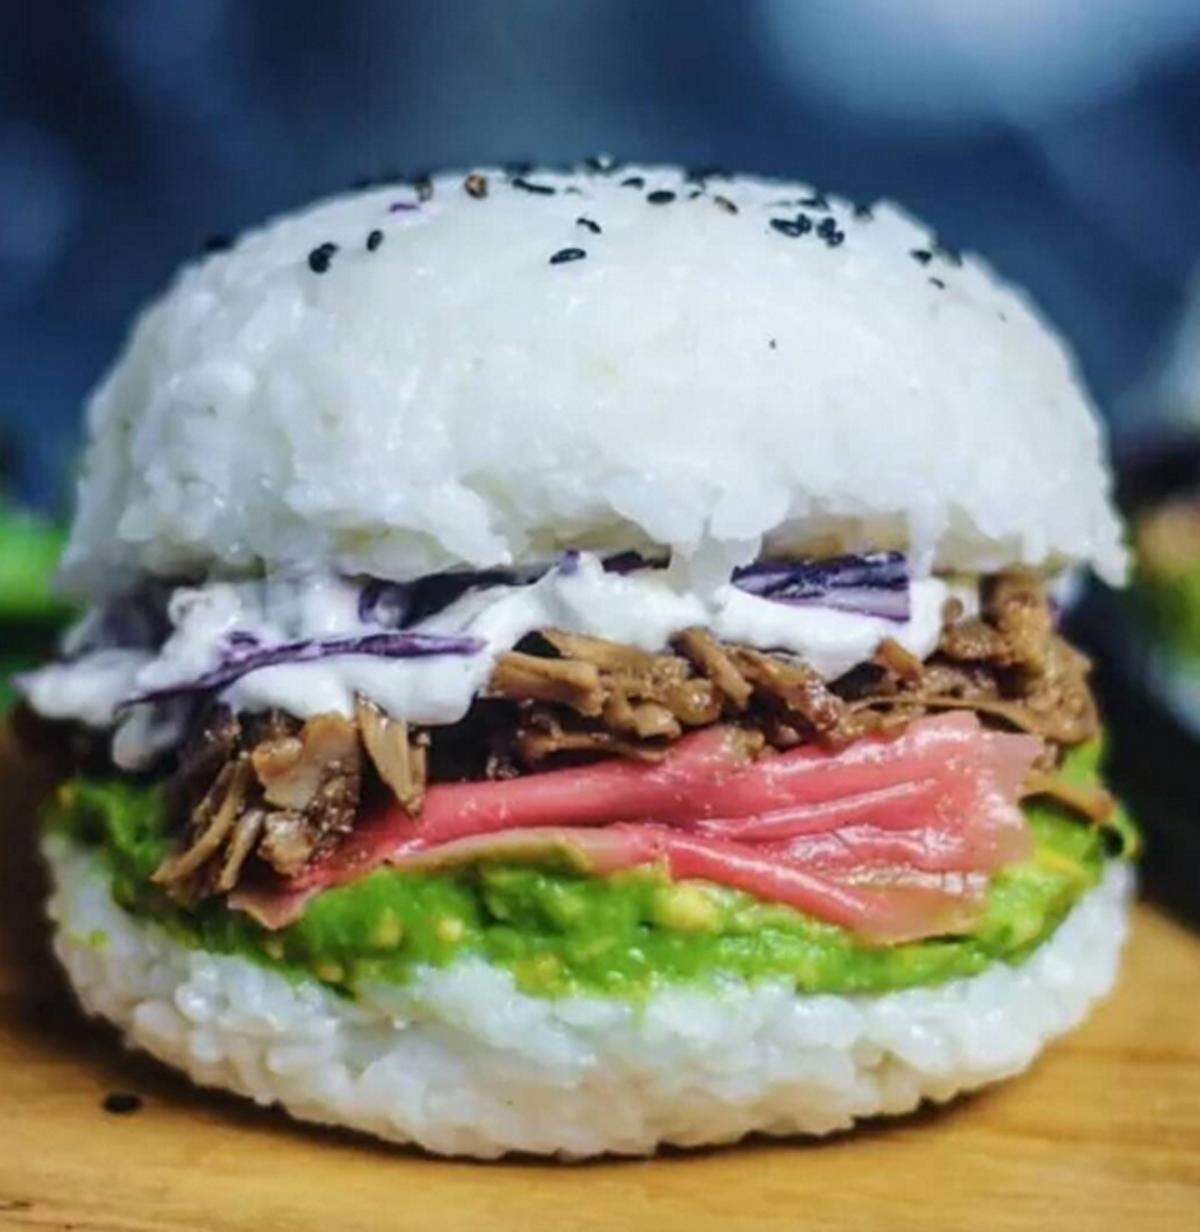 Sushi in Form von einem Burger ist ebenfalls ein neuer Foodtrend aus den USA. Statt einem Burger-Brötchen kommt Reis zum Einsatz, bei der Fülle ist der Fantasie keine Grenzen gesetzt.